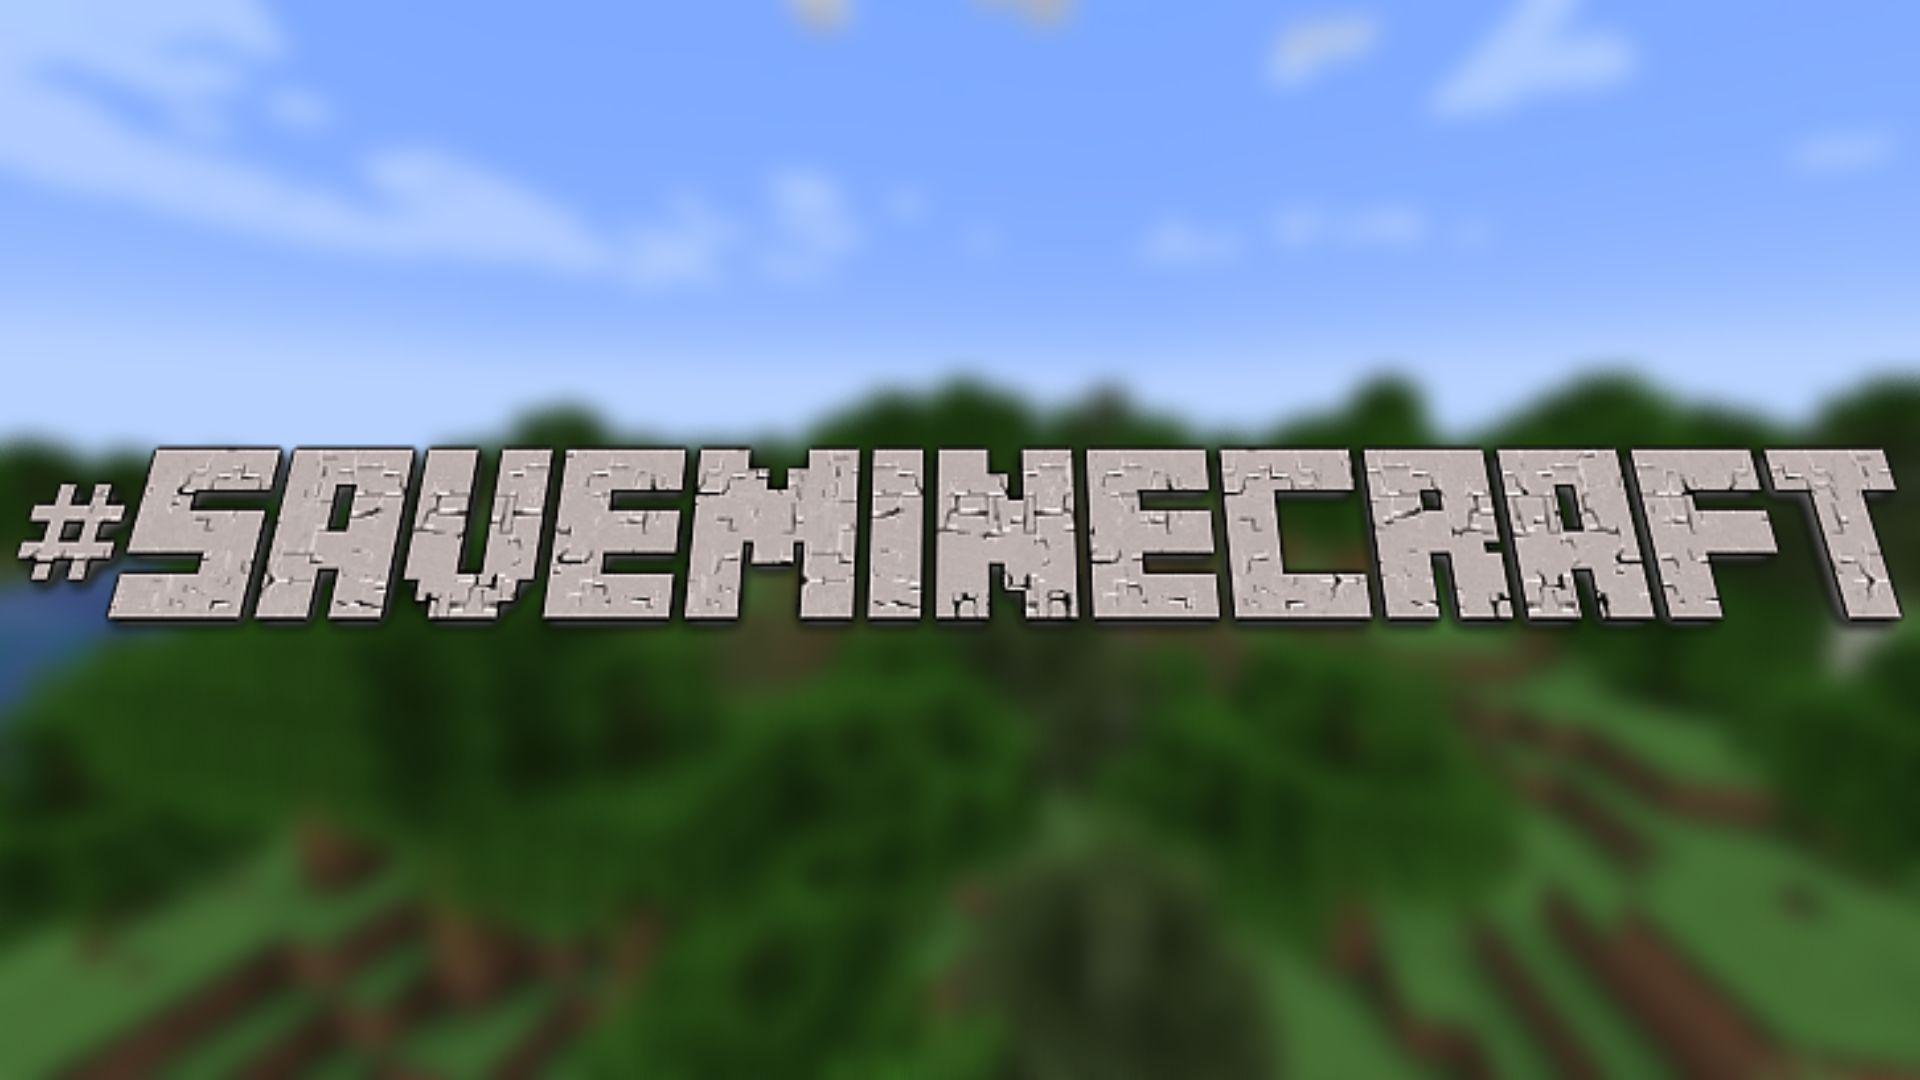 #SaveMinecraft over a Minecraft background